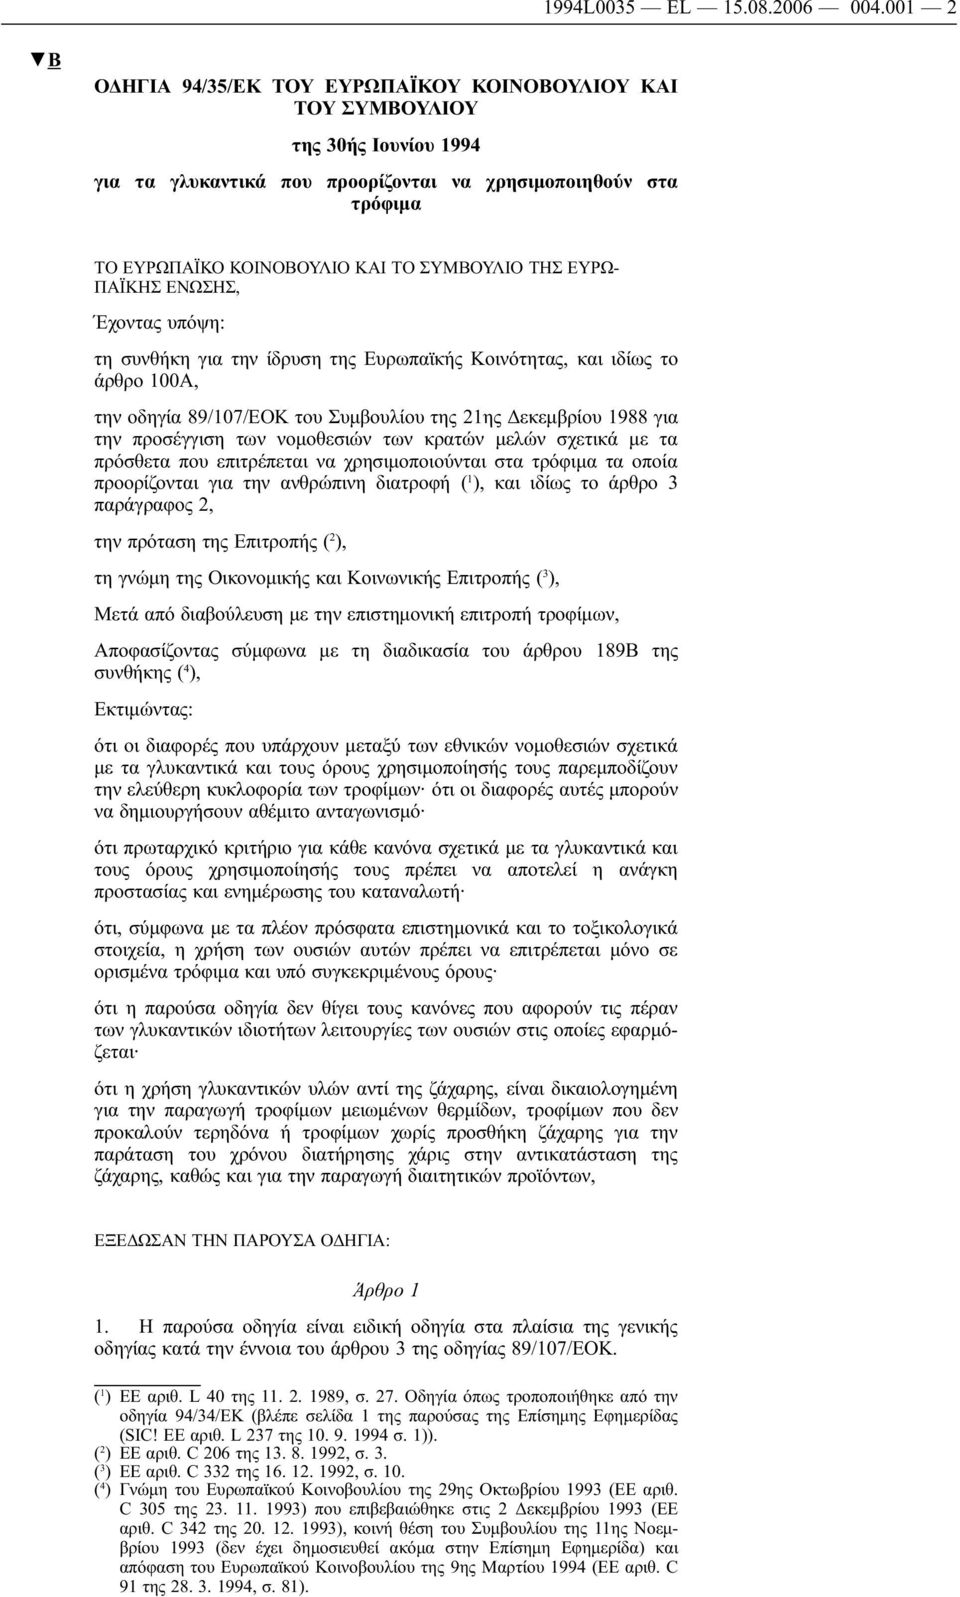 ΤΗΣ ΕΥΡΩ- ΠΑΪΚΗΣ ΕΝΩΣΗΣ, Έχοντας υπόψη: τη συνθήκη για την ίδρυση της Ευρωπαϊκής Κοινότητας, και ιδίως το άρθρο 100Α, την οδηγία 89/107/ΕΟΚ του Συμβουλίου της 21ης Δεκεμβρίου 1988 για την προσέγγιση